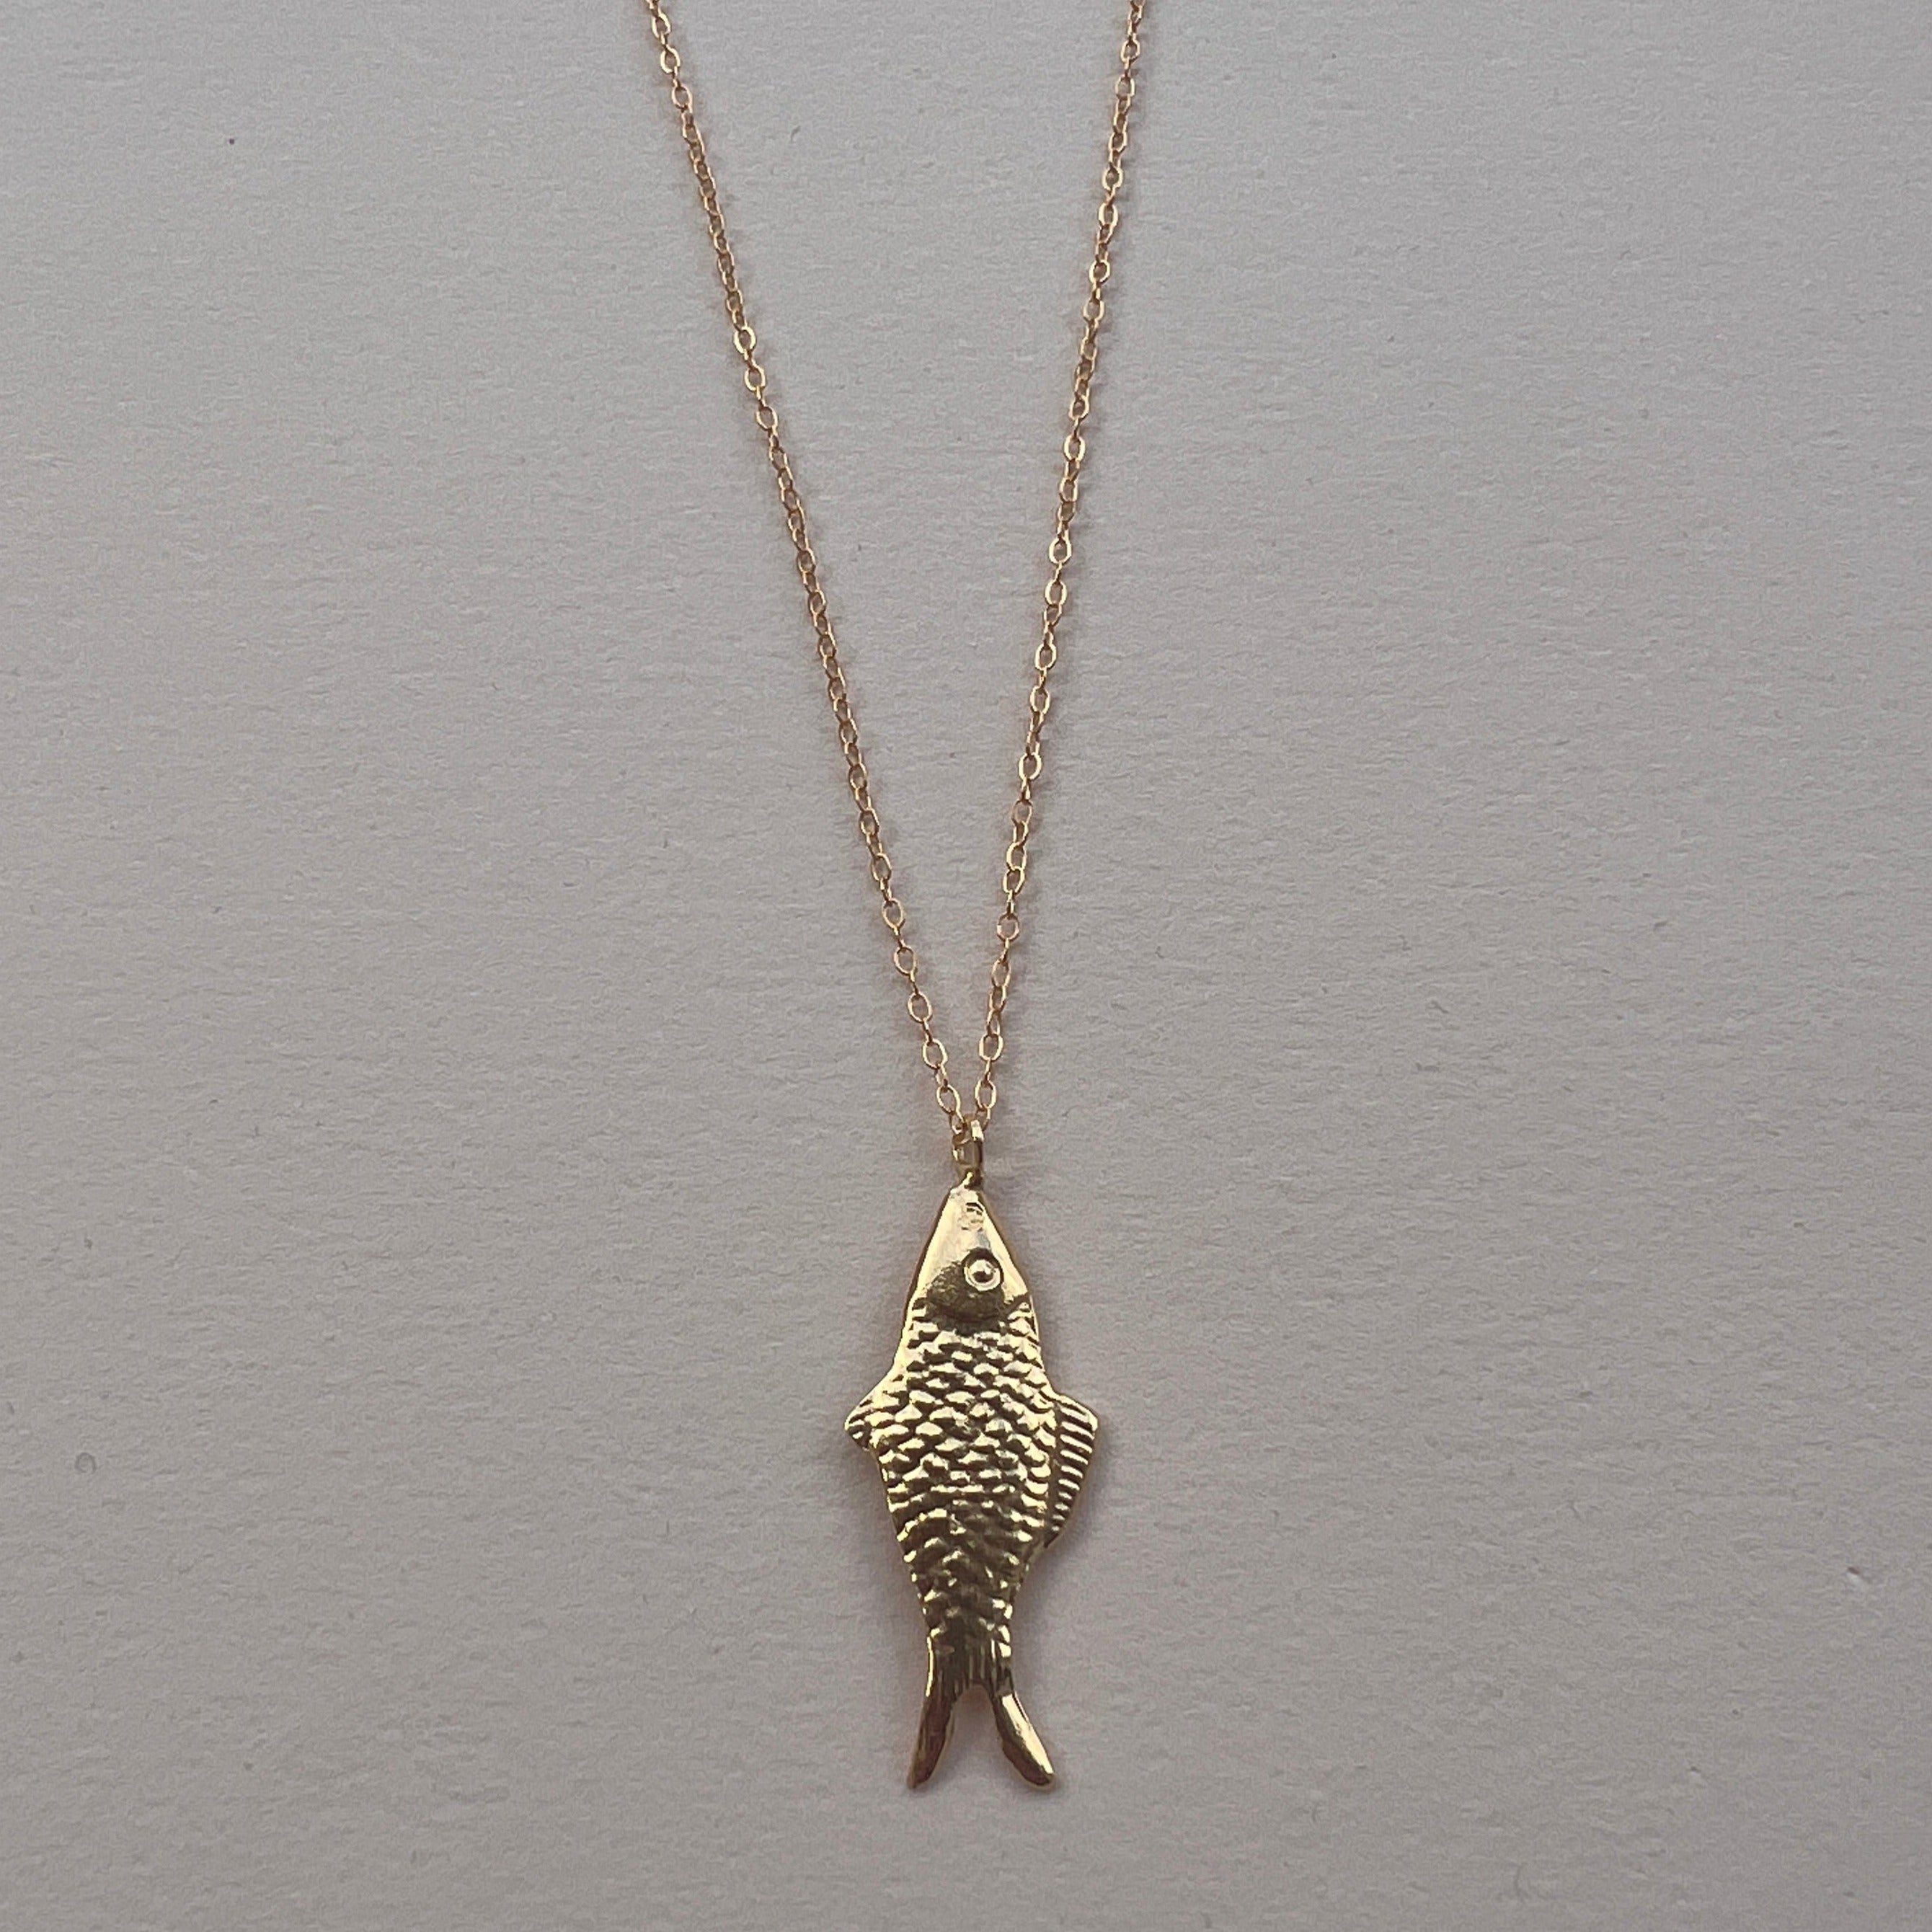 Noosa River Fish Necklace – Maxine Noosa